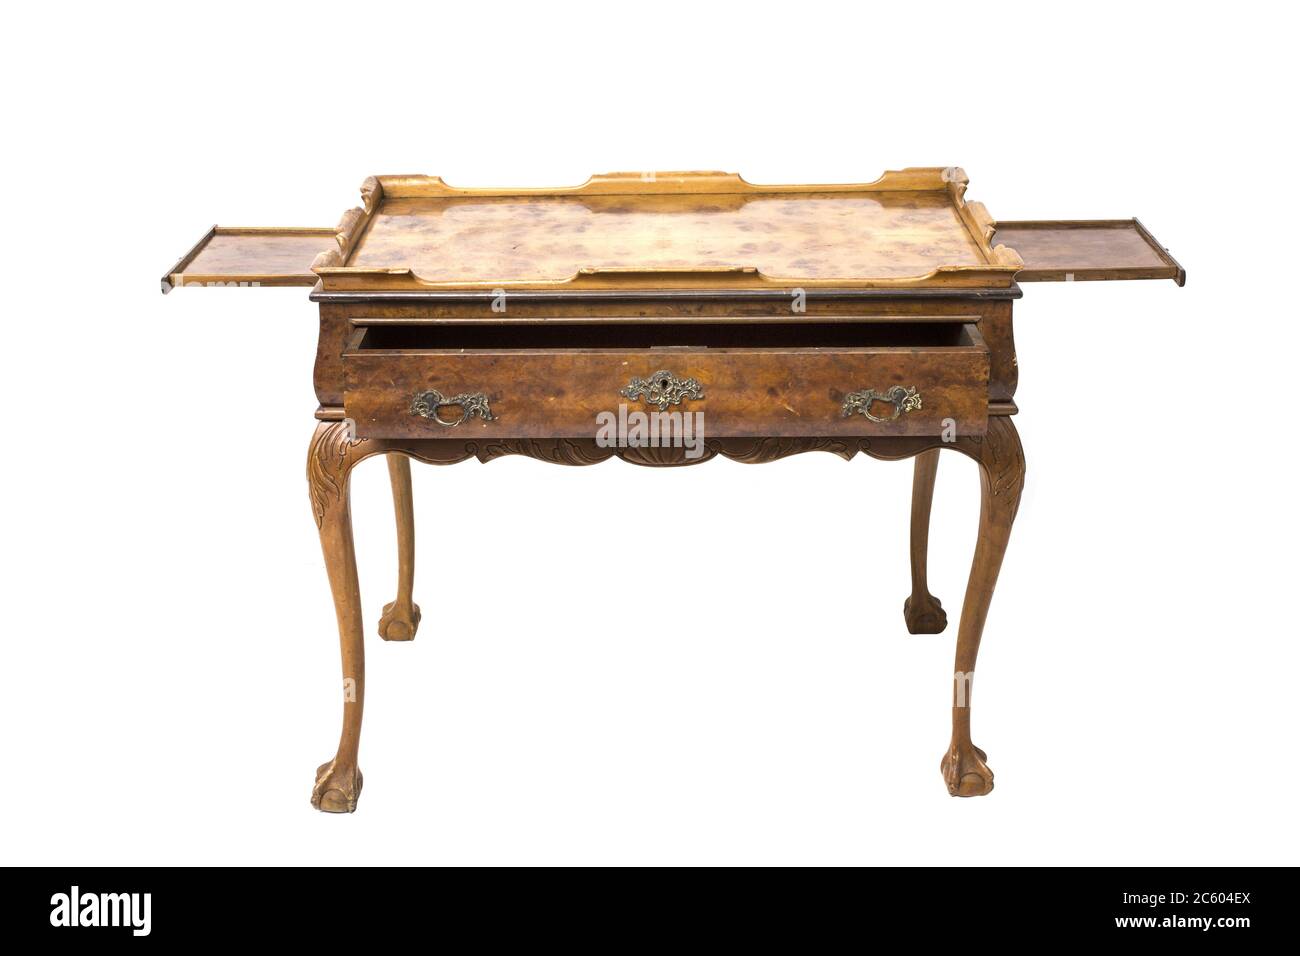 Table en bois antique avec tiroir sur fond blanc. Banque D'Images